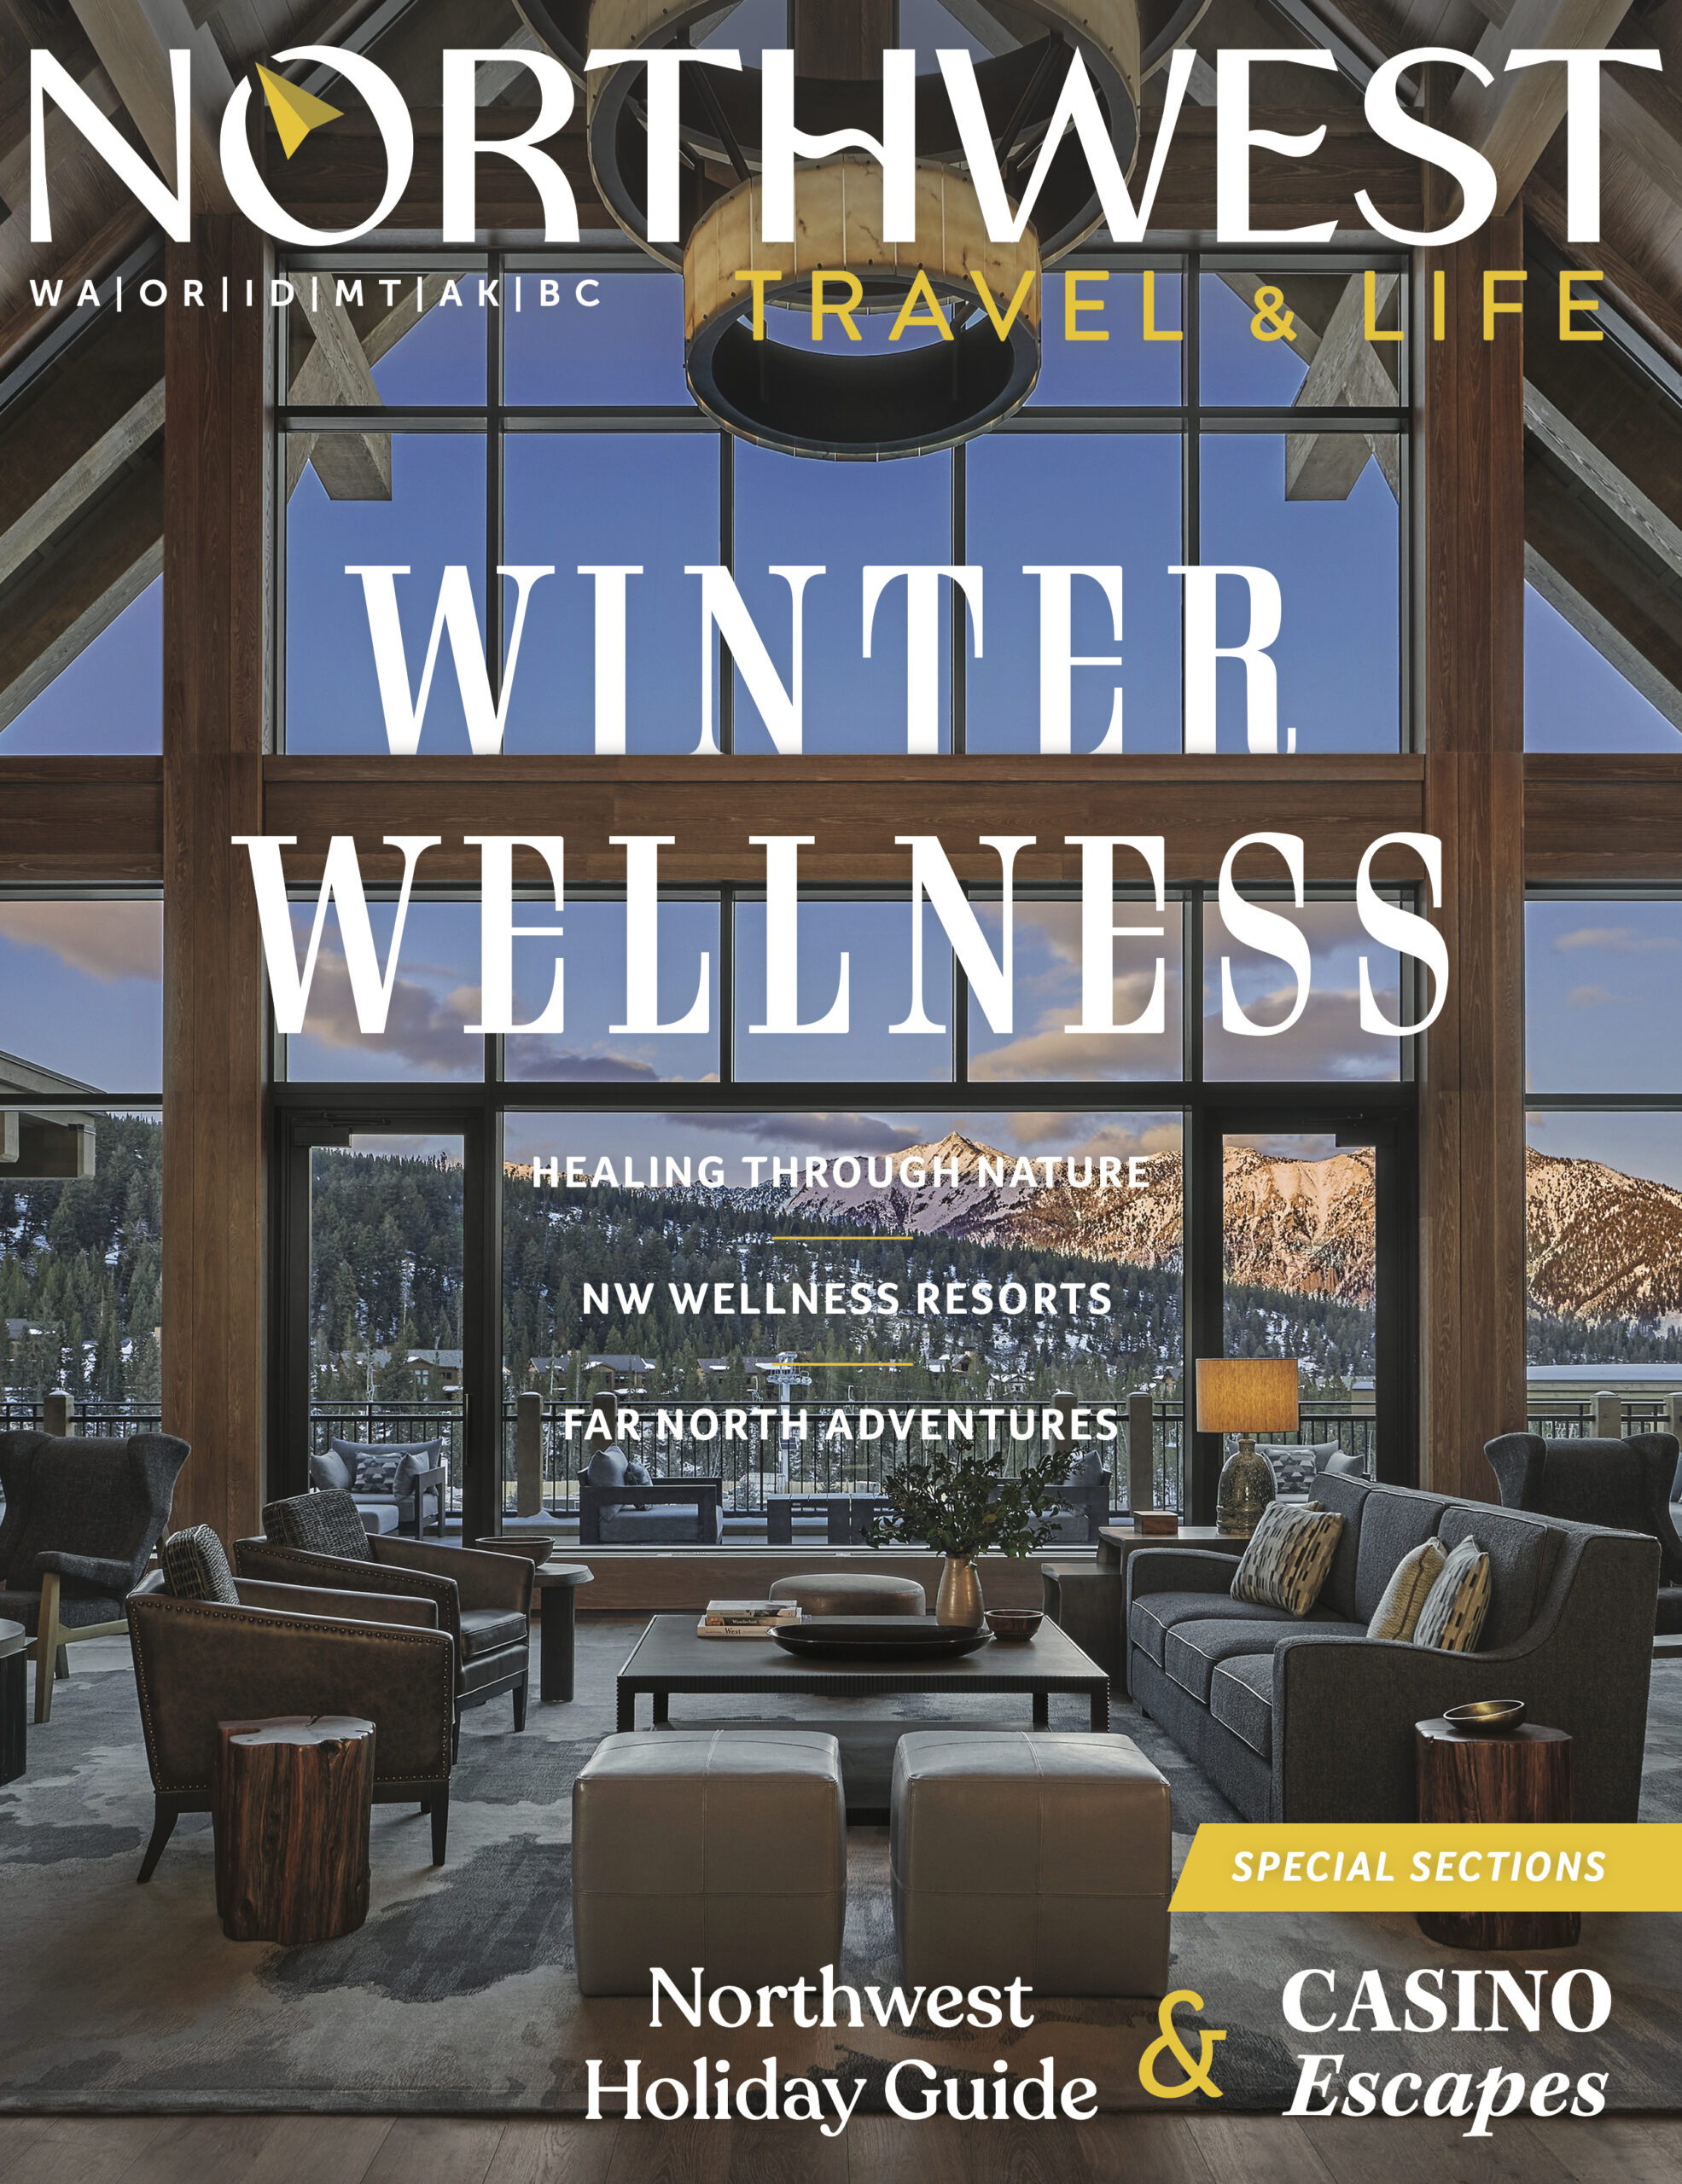 NorthWest Travel & Life Magazine Cover